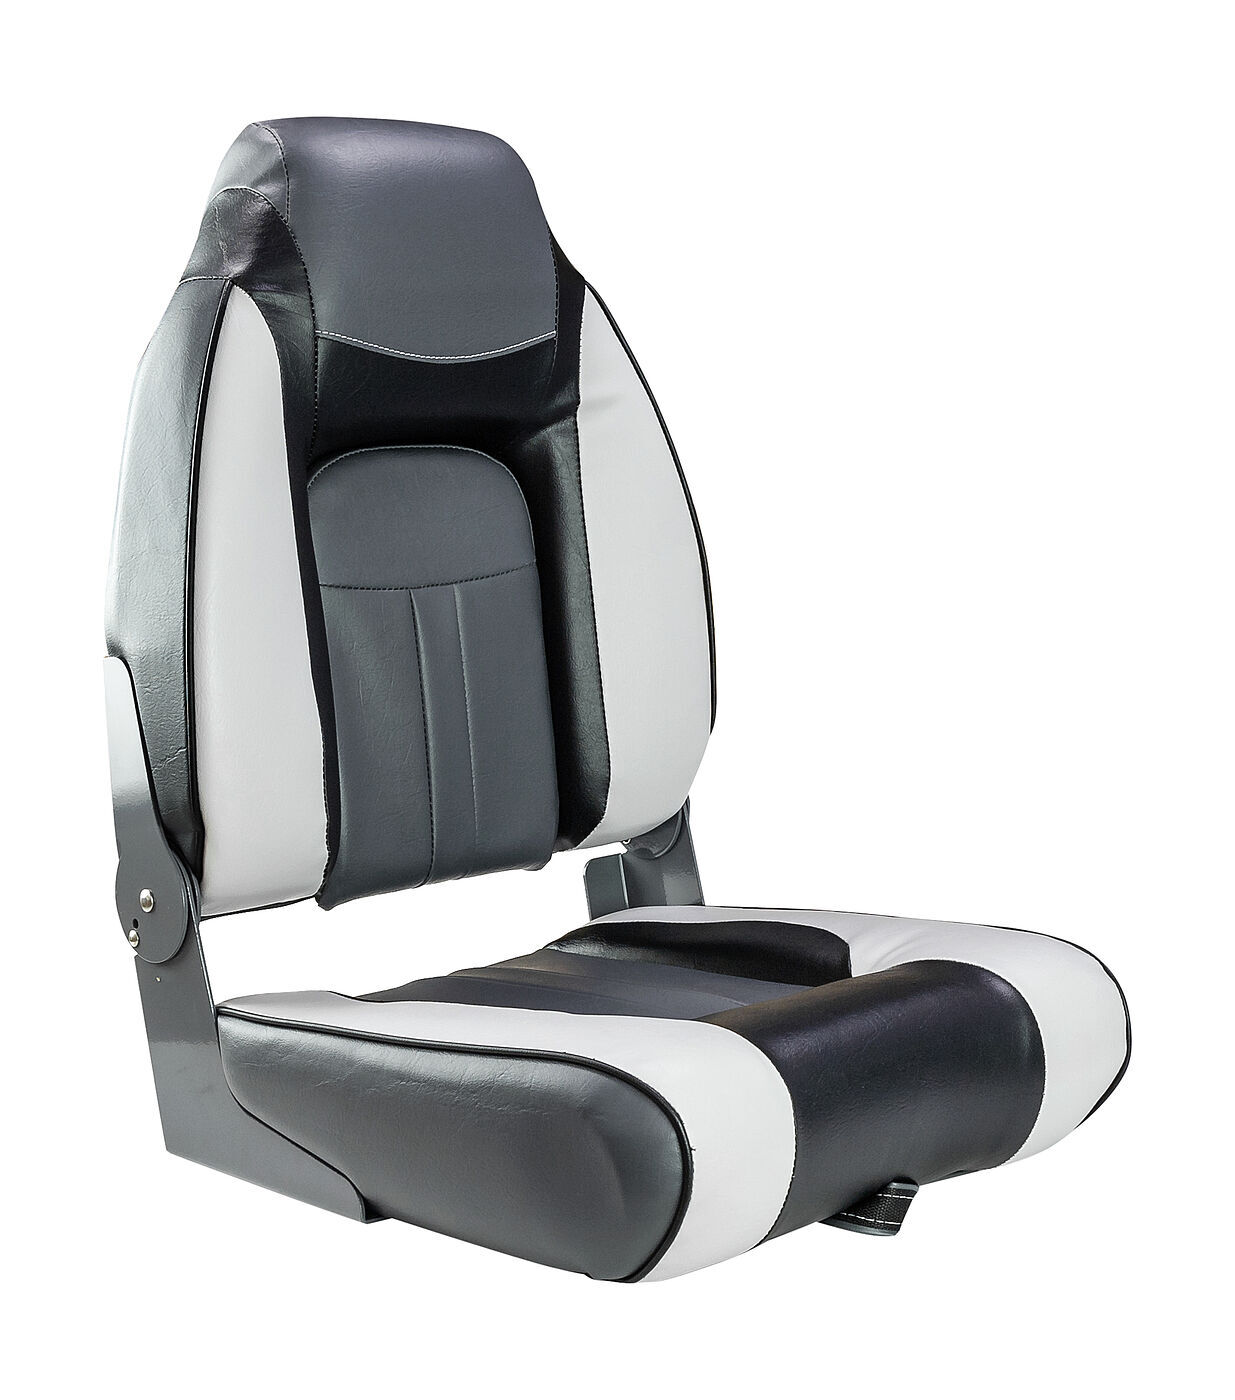 Сиденье мягкое складное Premium Designer High back Seat, серо-чёрное Newstarmarine 75157gcb